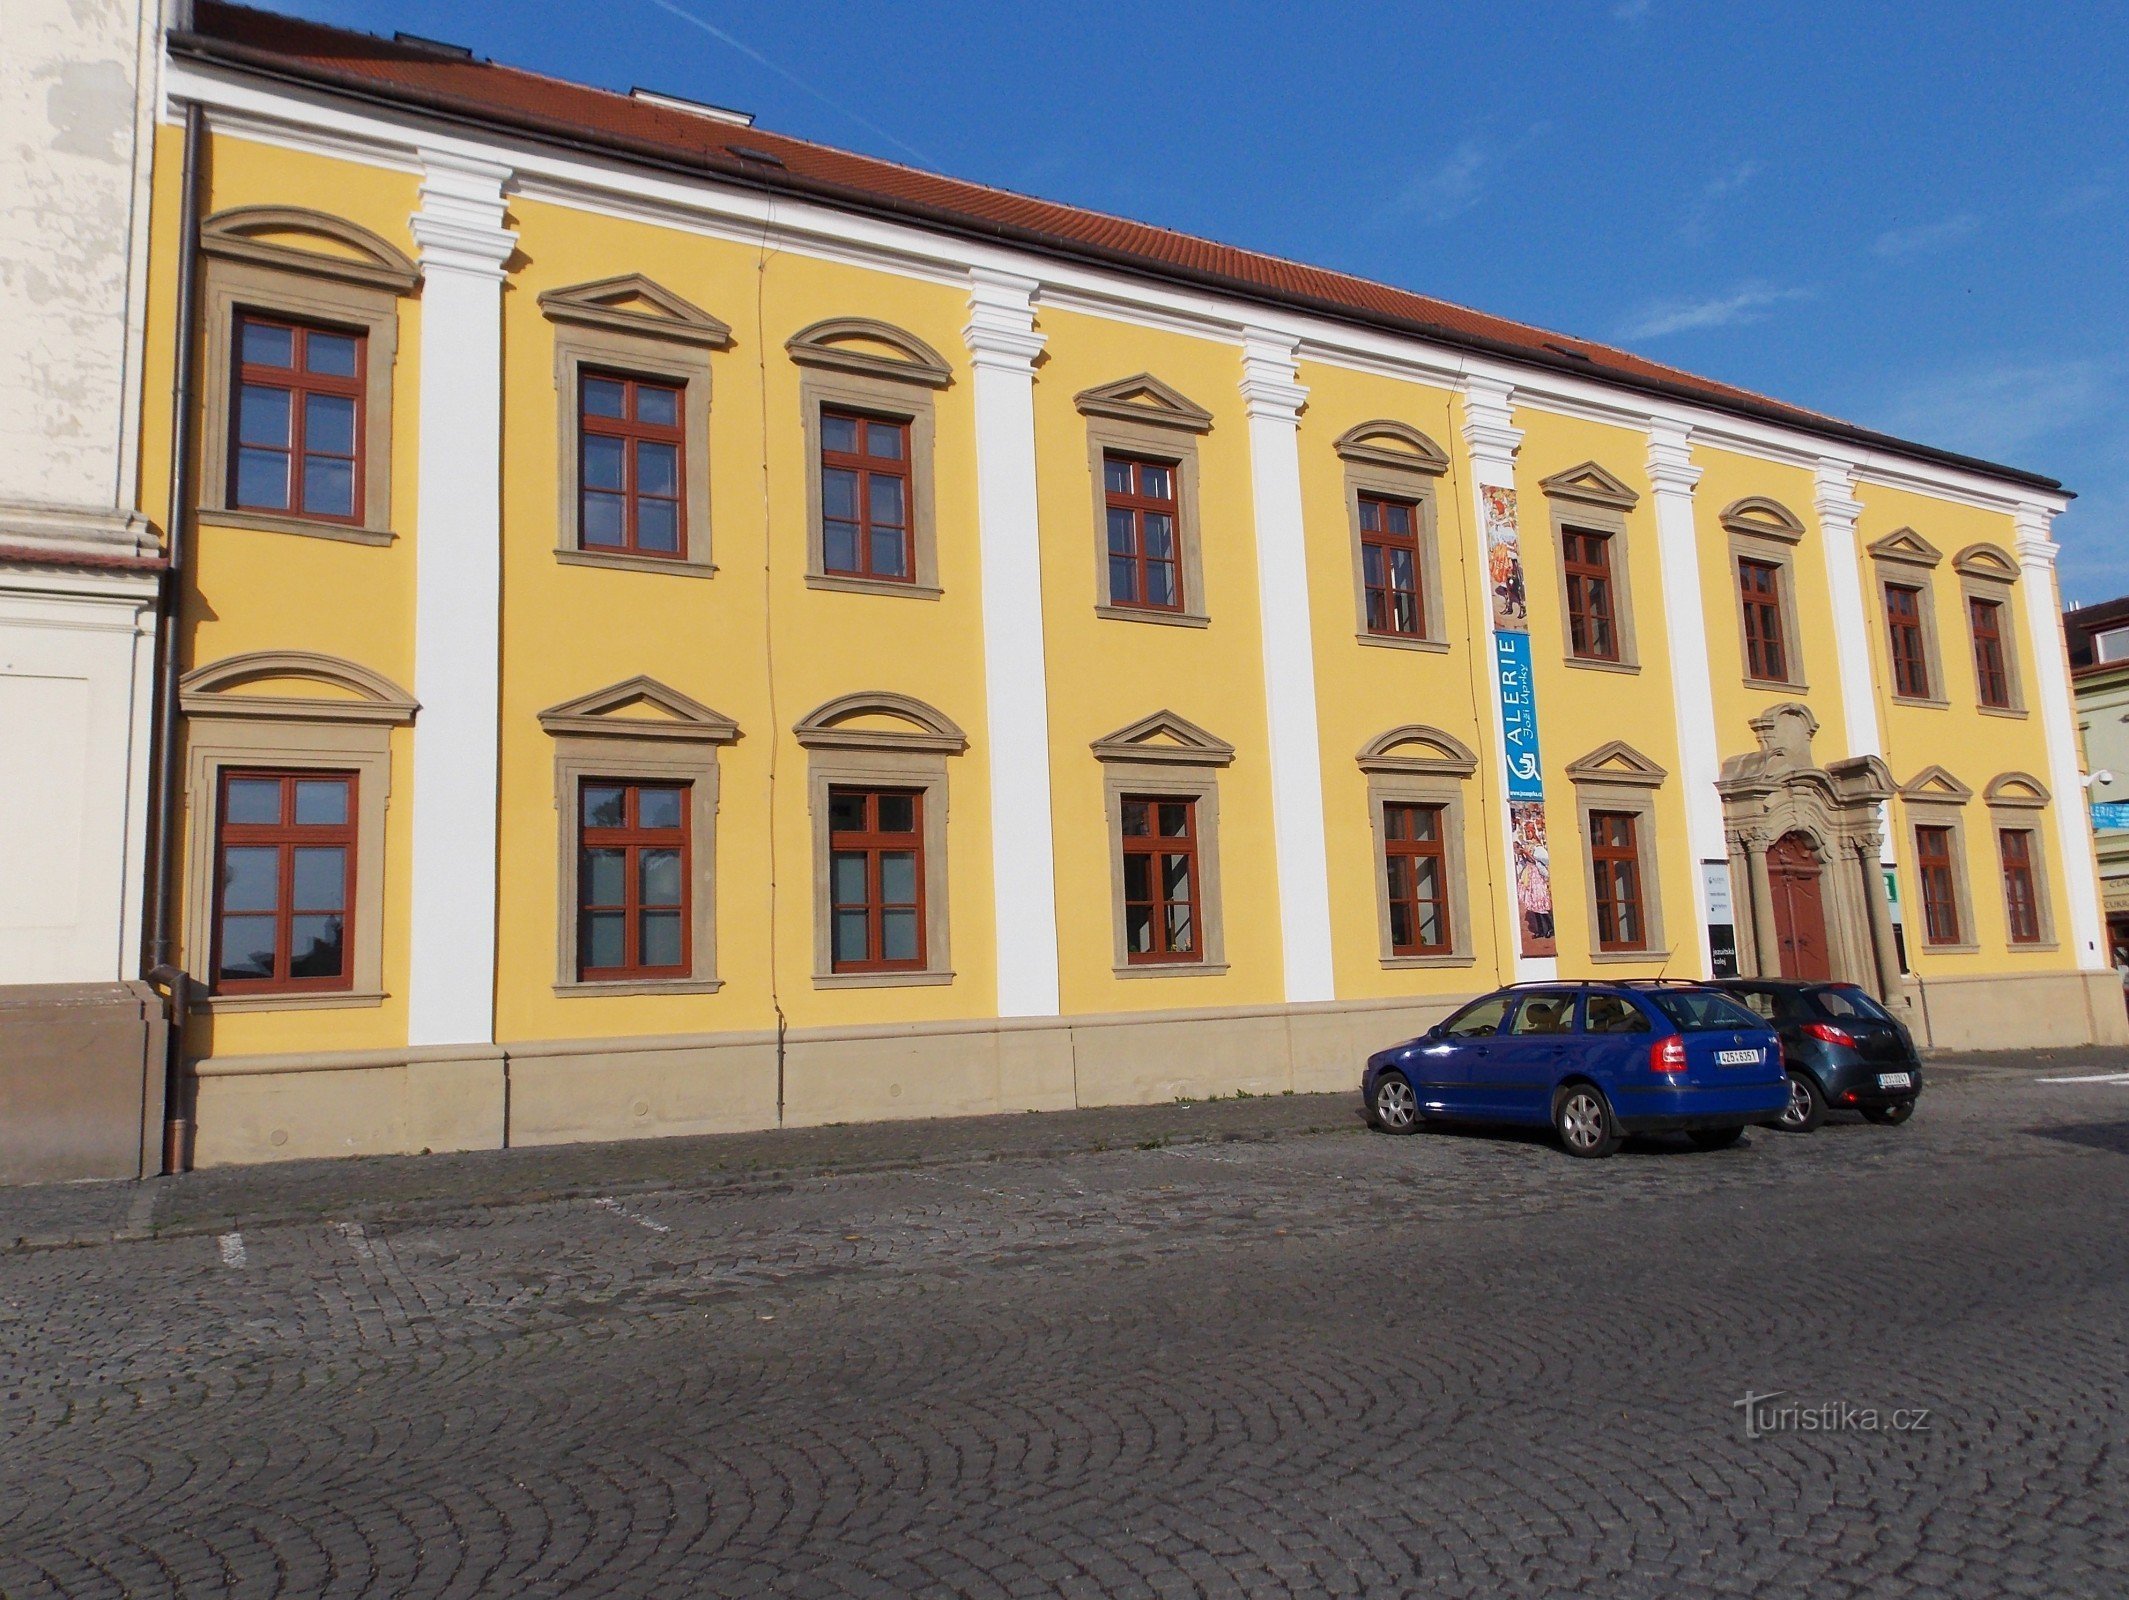 Trung tâm Văn hóa và Truyền thống Slovak ở Uh. Hradišti